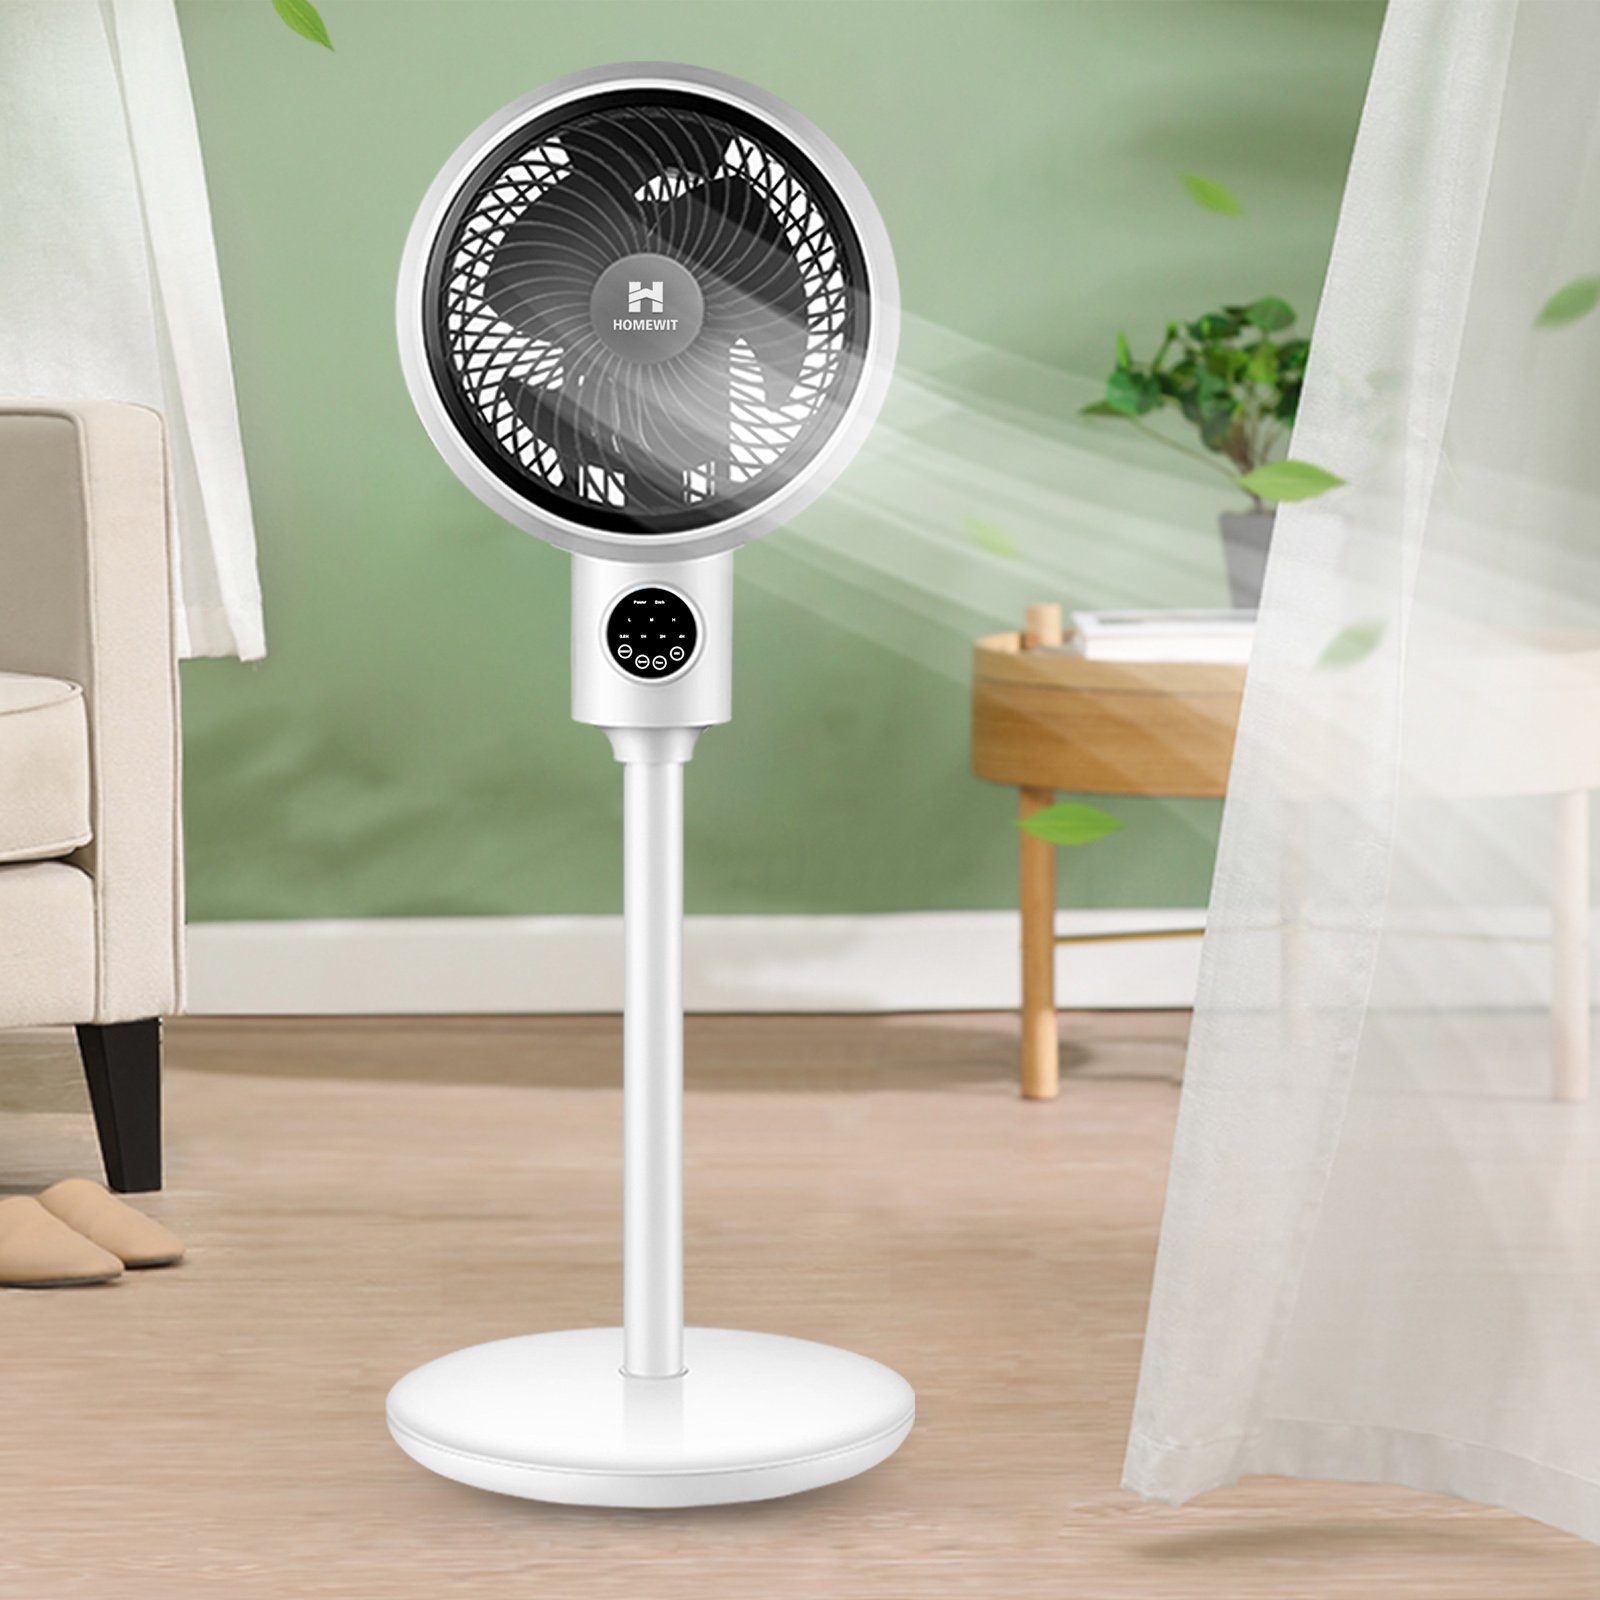 Homewit Turmventilator Standventilator Leise Ventilator mit Schlafzimmer Luftumwälzung usw. Timer-Einstellung, Wohnzimmer für Fernbedienung 3D